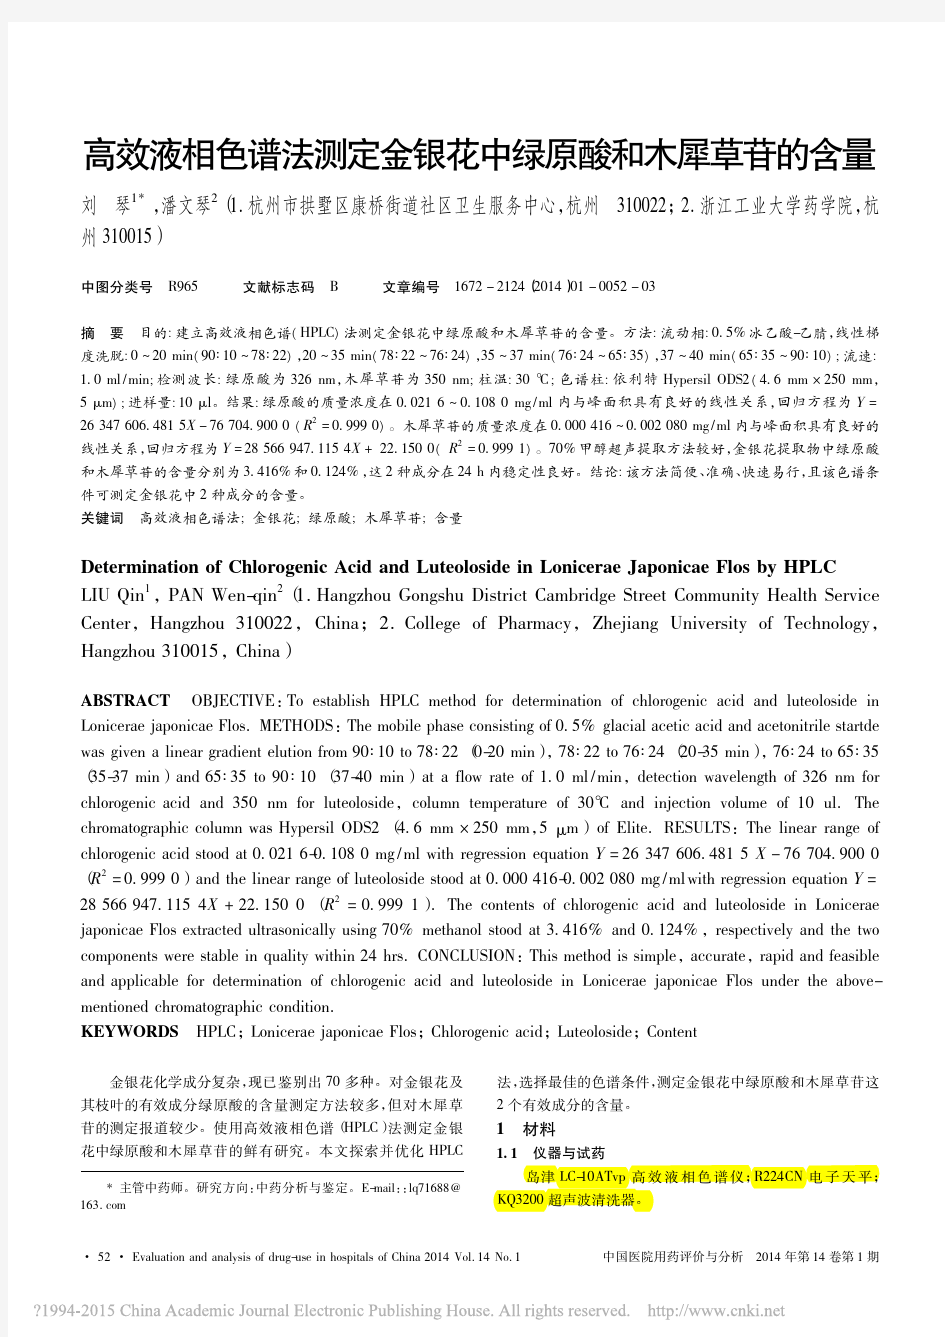 (一般)高效液相色谱法测定金银花中绿原酸和木犀草苷的含量_刘琴